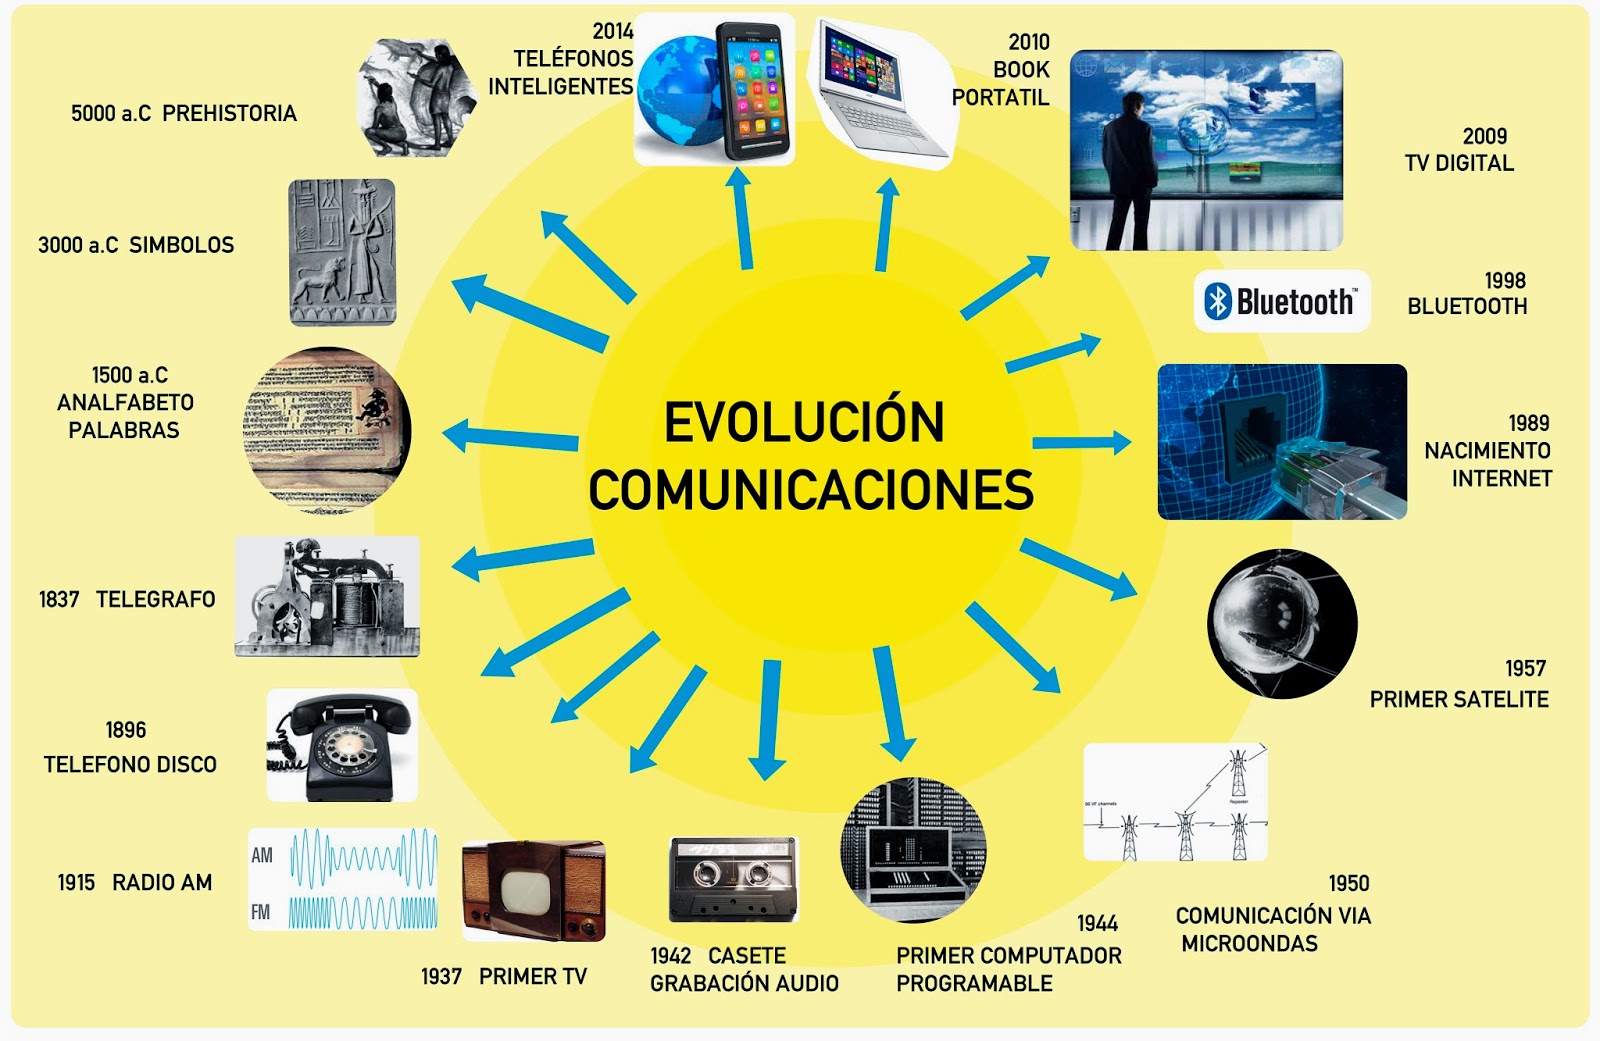 Evolución de las comunicaciones